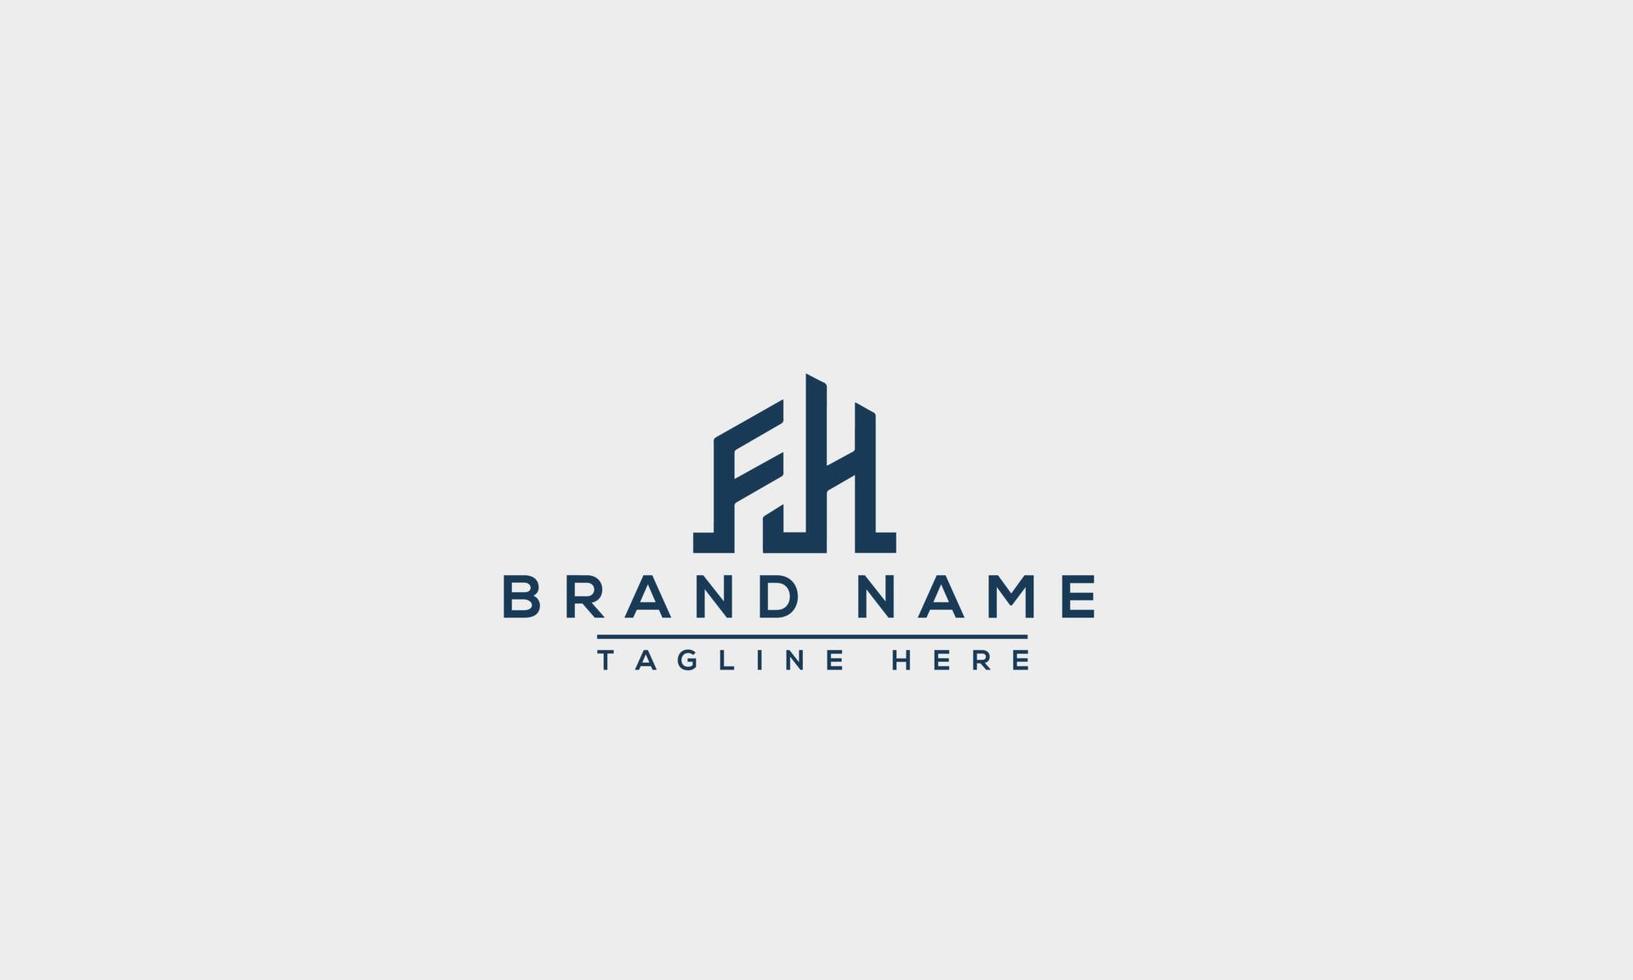 elemento de branding gráfico de vetor de modelo de design de logotipo fh.